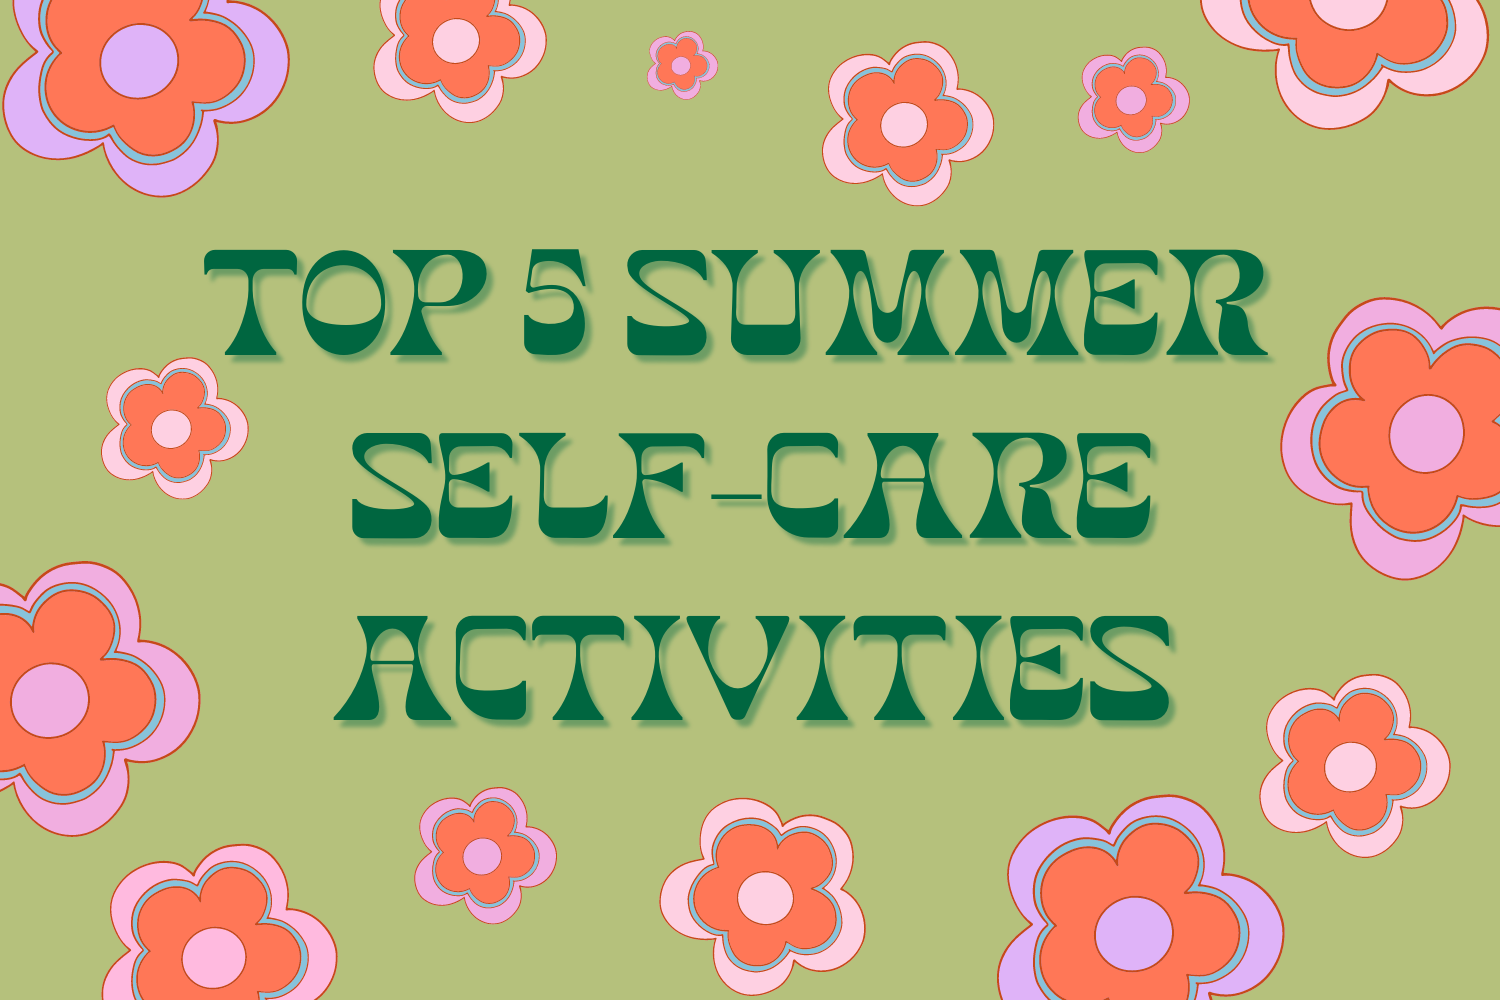 Top 5 Summer Self-Care Activities